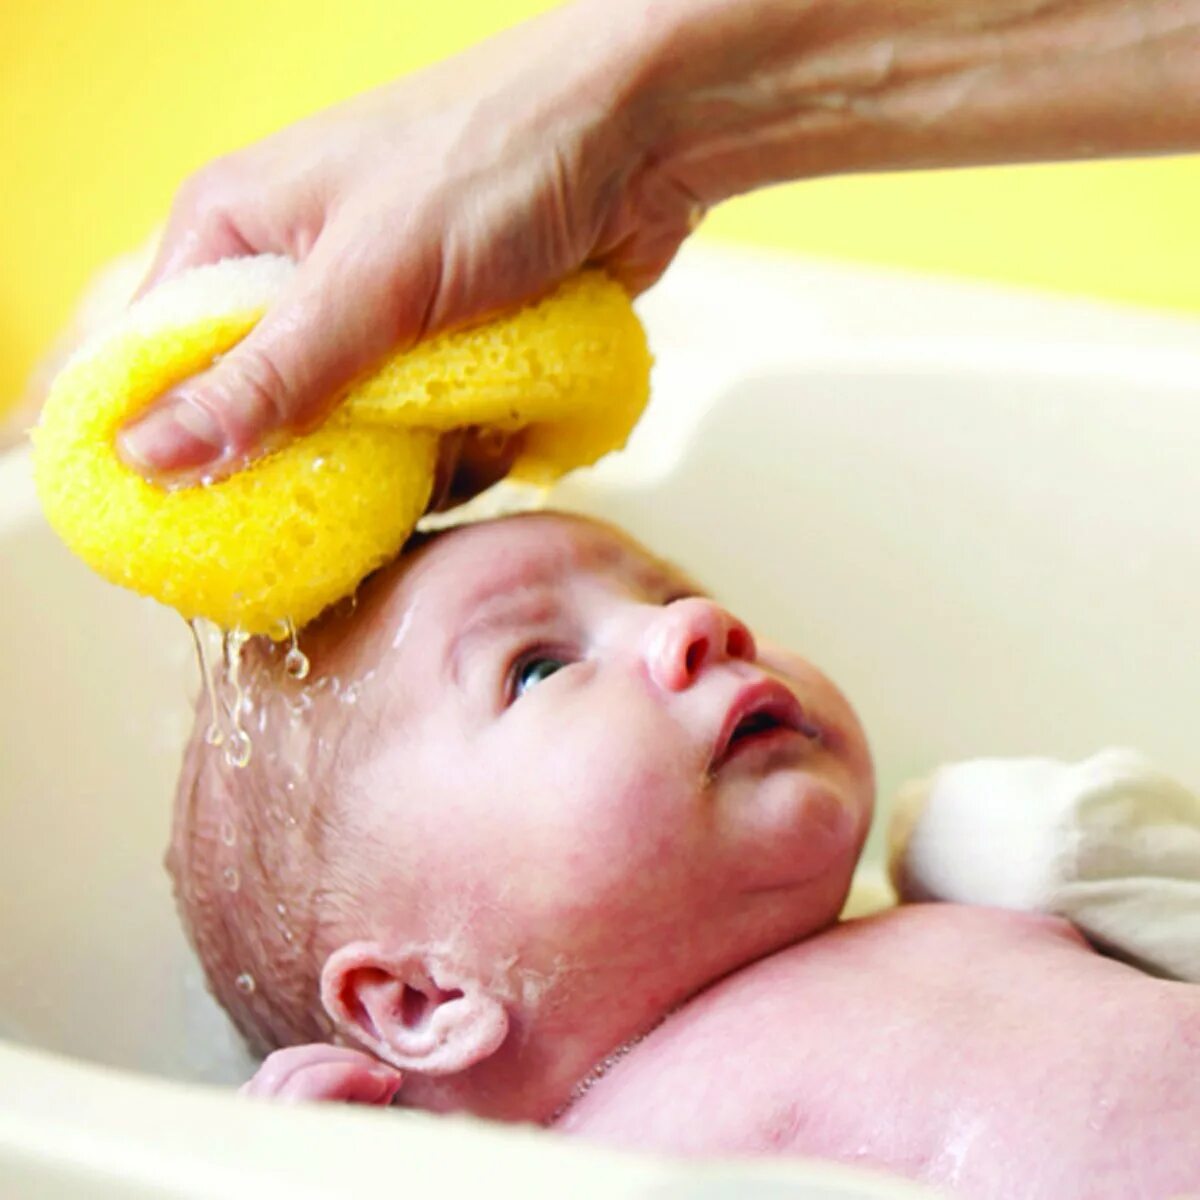 Мытье головы ребенка. Мытье головы детям. Мытье новорожденного ребенка. Уход за кожей новорожденного. Мытье головы новорожденному ребенку.